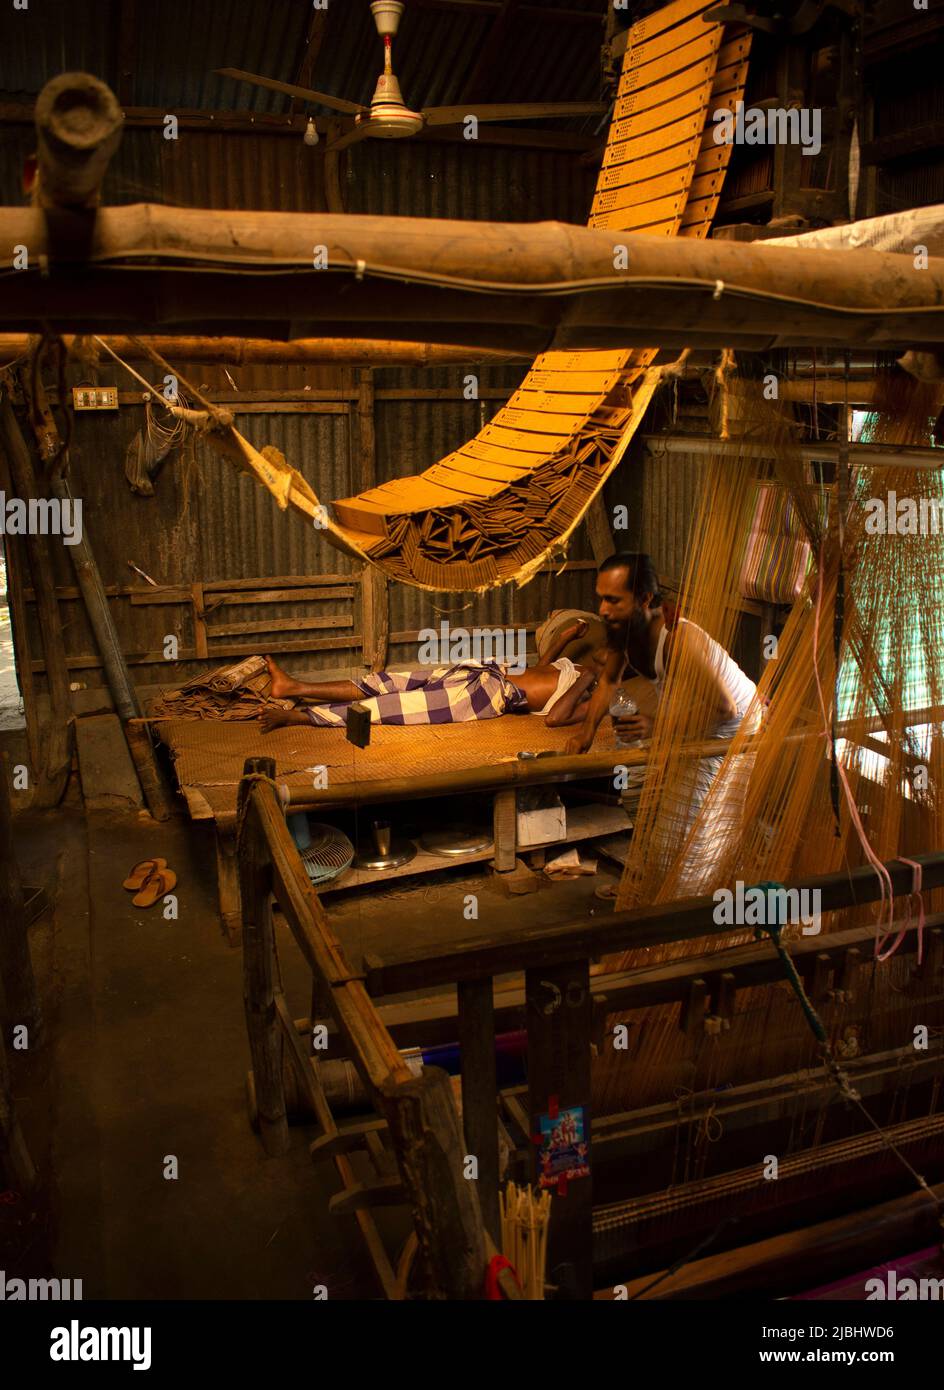 Weavers From Bangladesh 008 Stock Photo